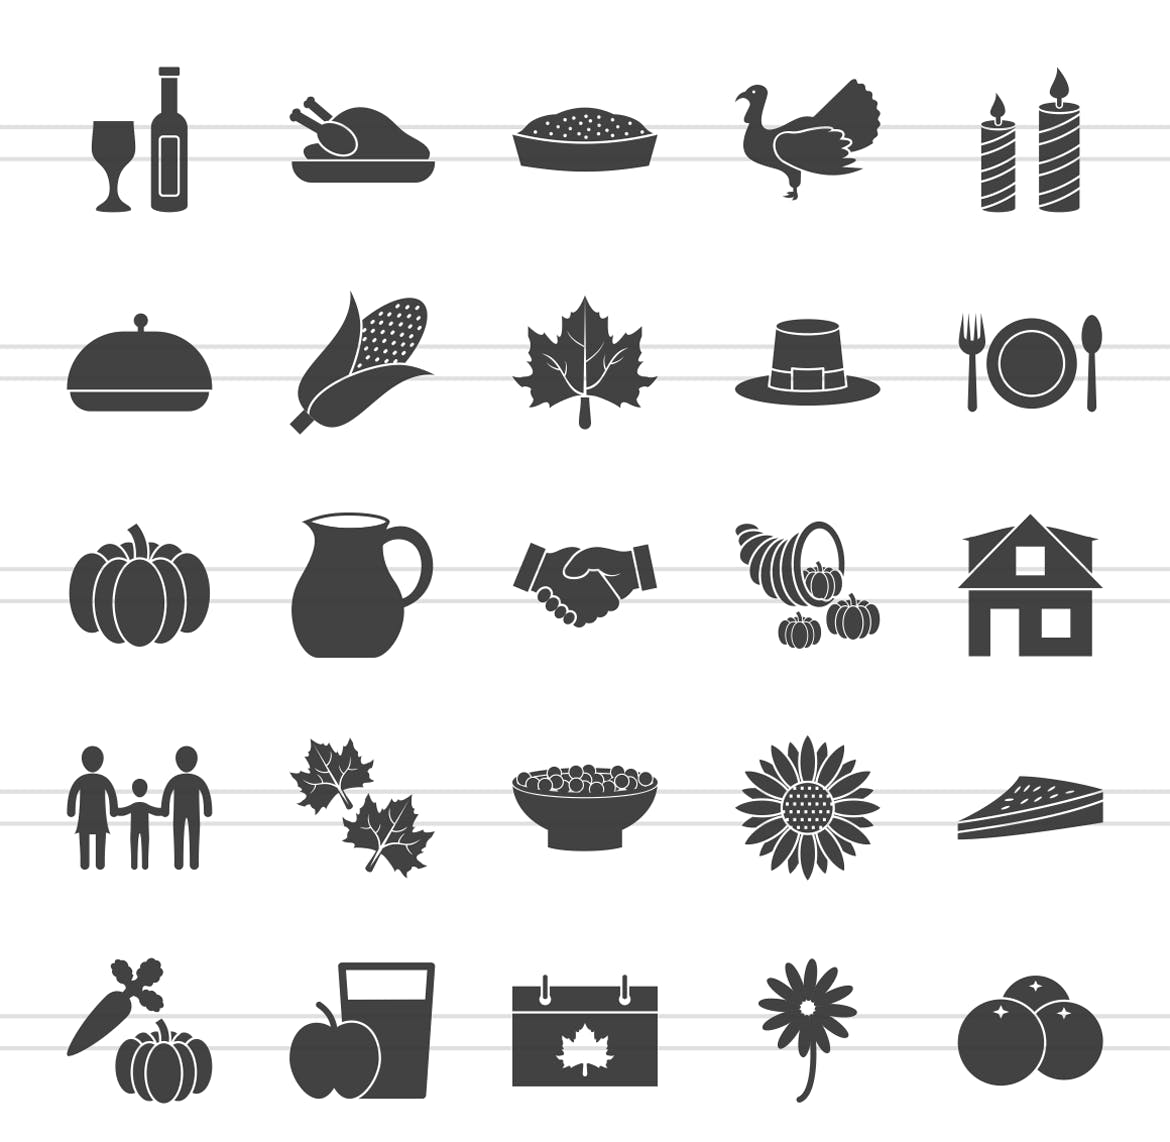 50枚感恩节主题矢量字体素材库精选图标 50 Thanksgiving Glyph Icons插图(1)